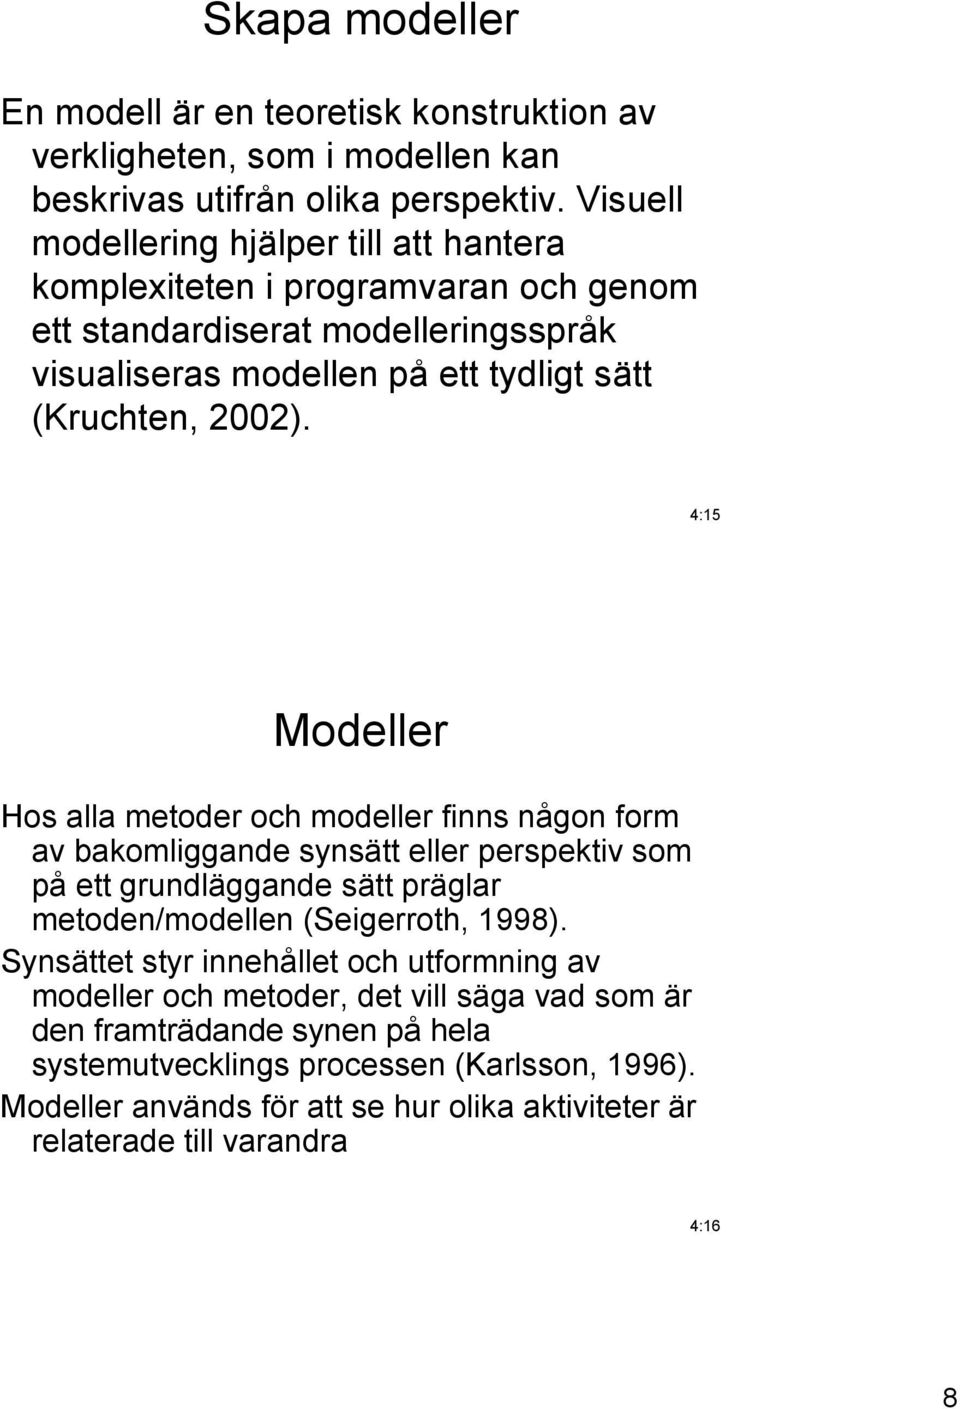 4:15 Modeller Hos alla metoder och modeller finns någon form av bakomliggande synsätt eller perspektiv som på ett grundläggande sätt präglar metoden/modellen (Seigerroth, 1998).